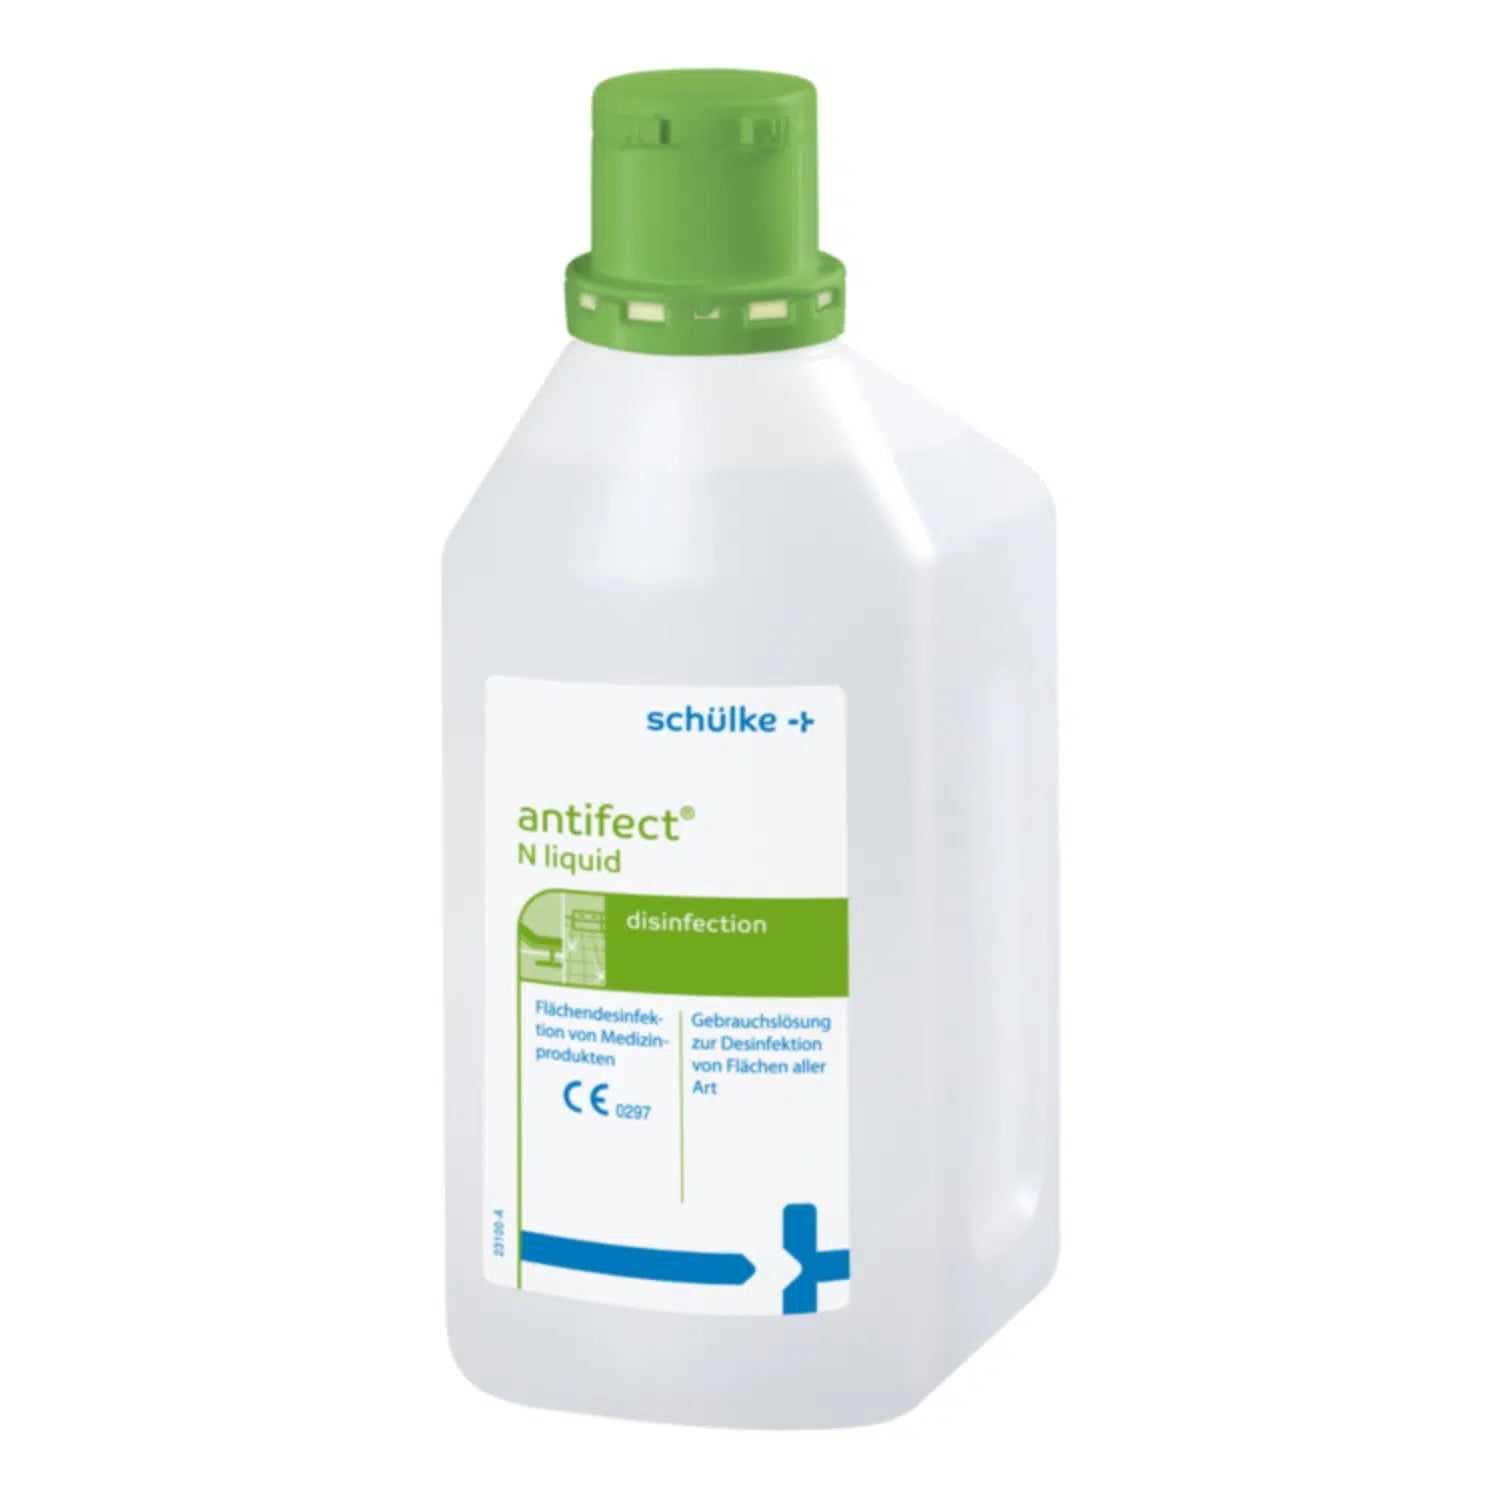 Eine weiße Plastikflasche mit der Aufschrift „Schülke antifect® N Liquid Flächendesinfektion“ und grünem Verschluss, zur Schnelldesinfektion. Enthält einen deutschen Text, der auf die Verwendung des Produkts zur Desinfektion hinweist.